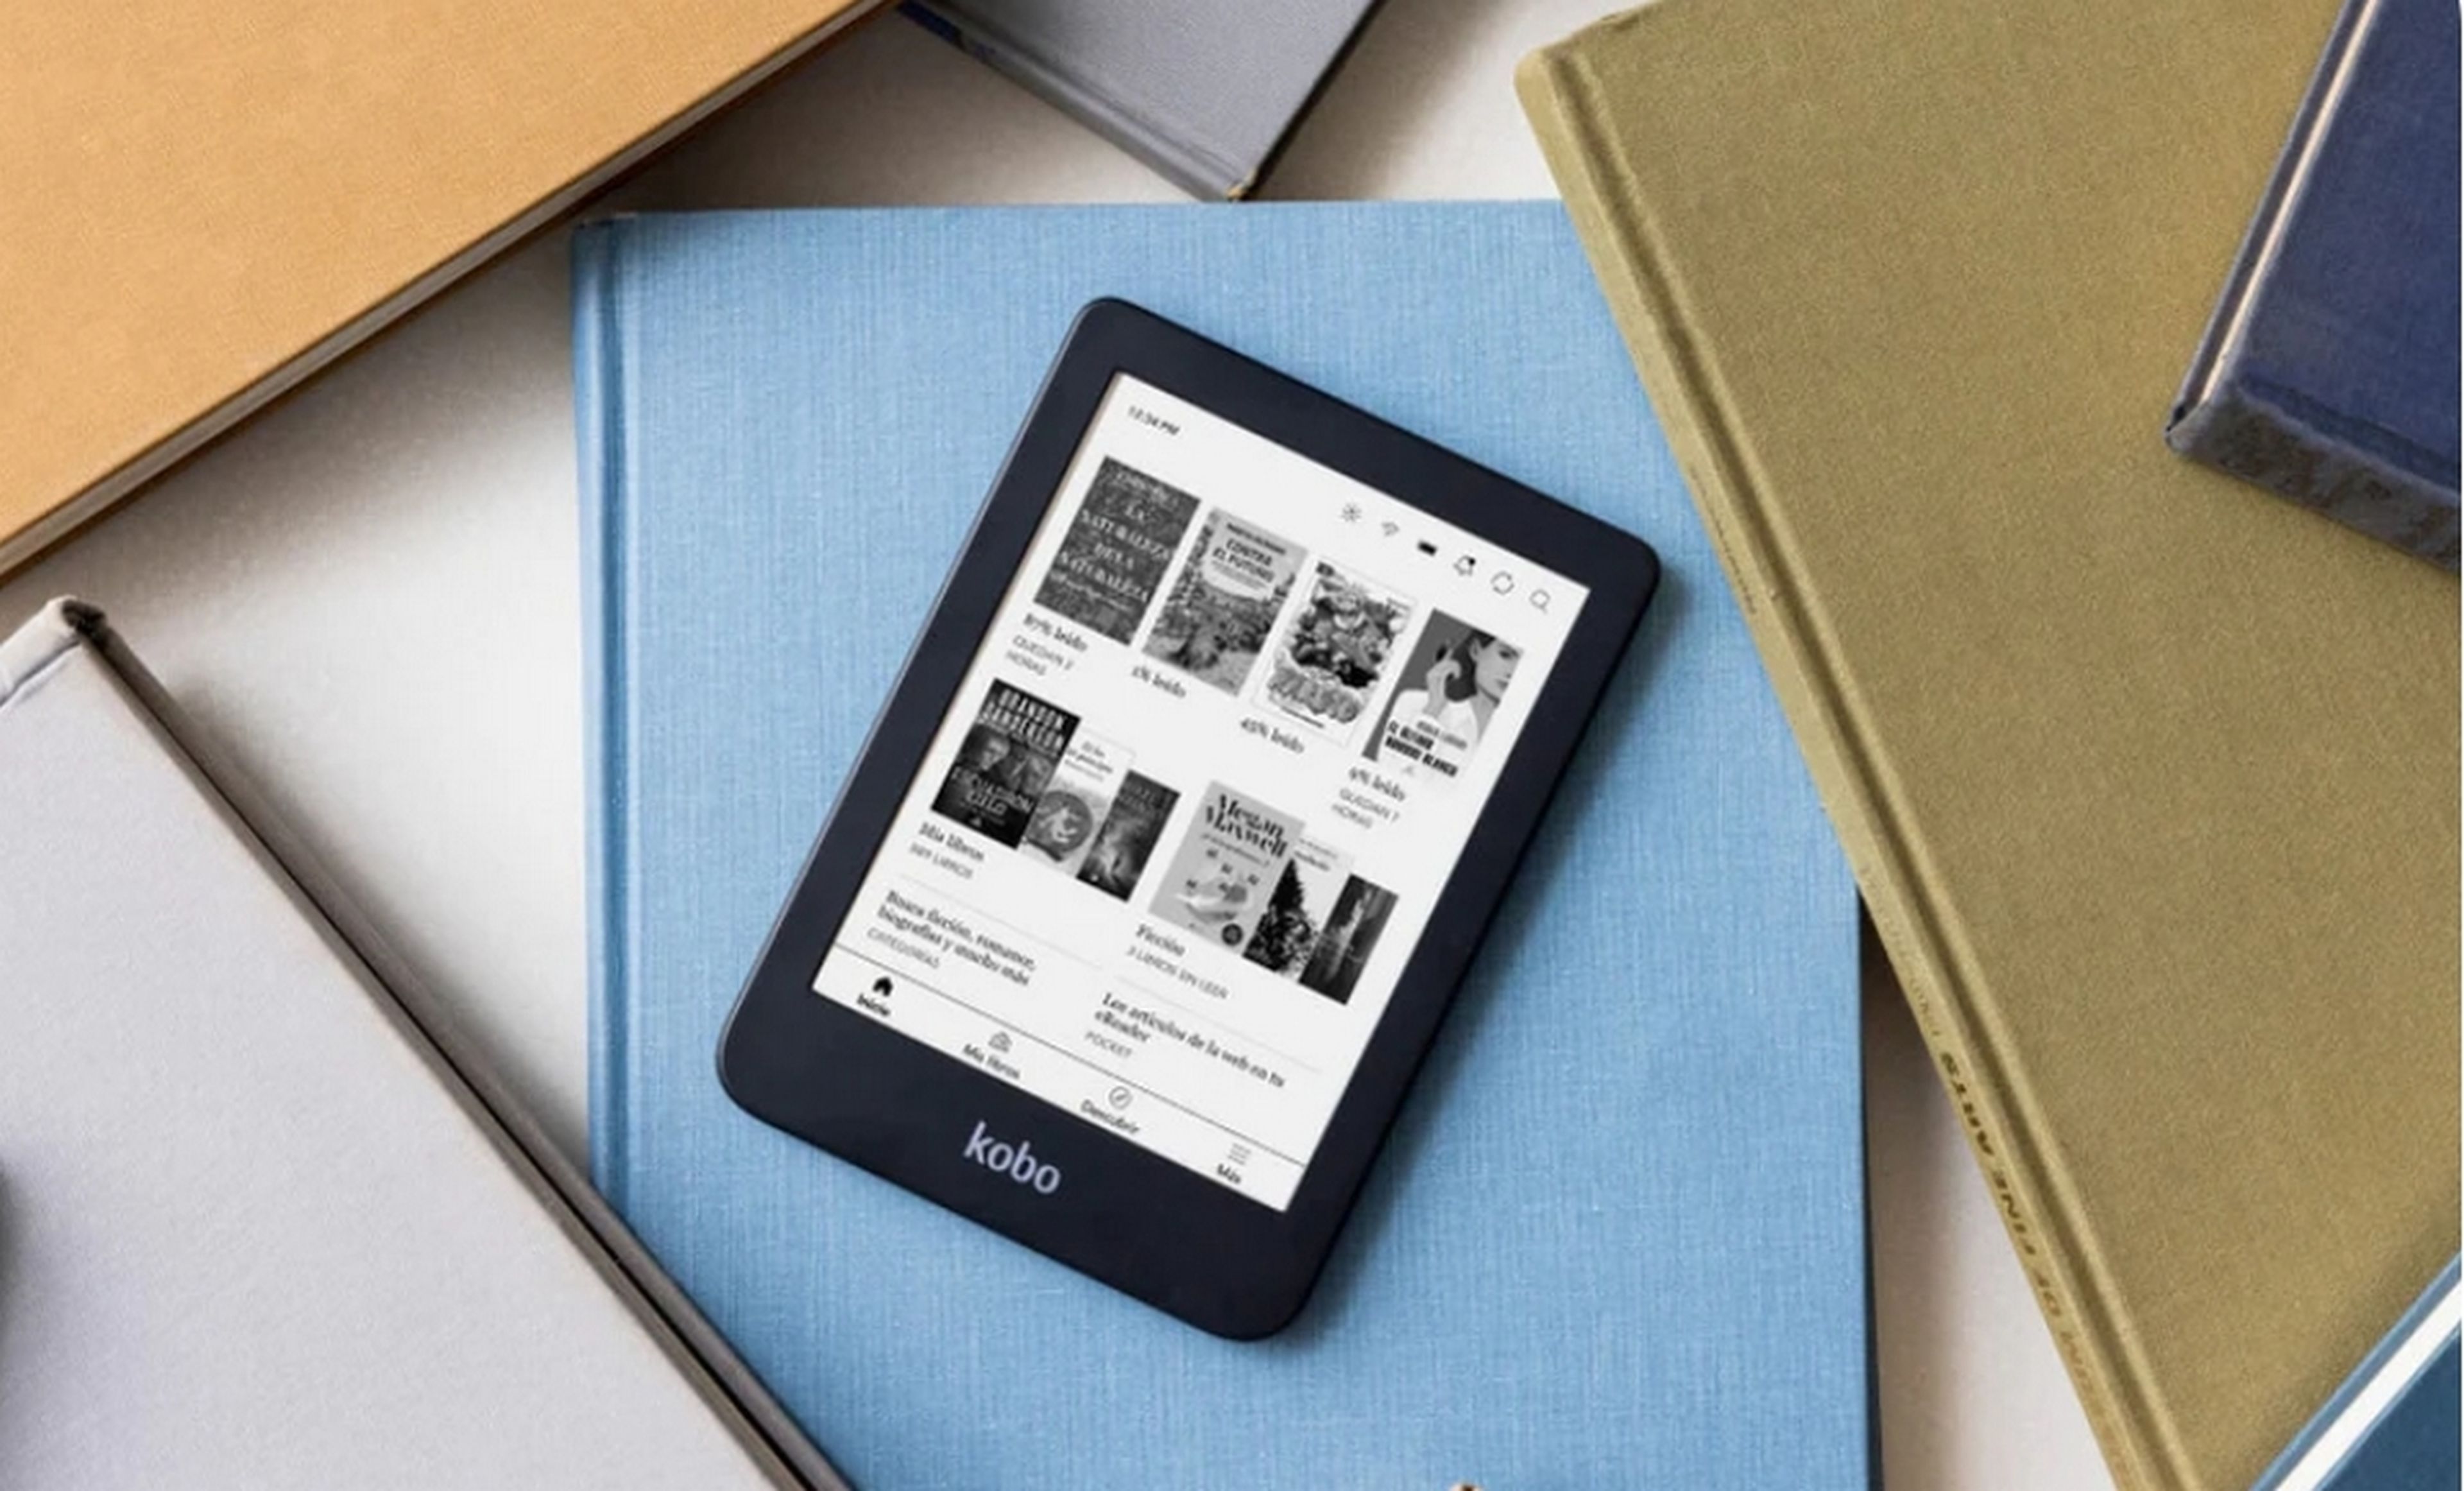 Amazon Kindle no llega antes de Navidad, pero este ebook de Kobo sí y está en oferta